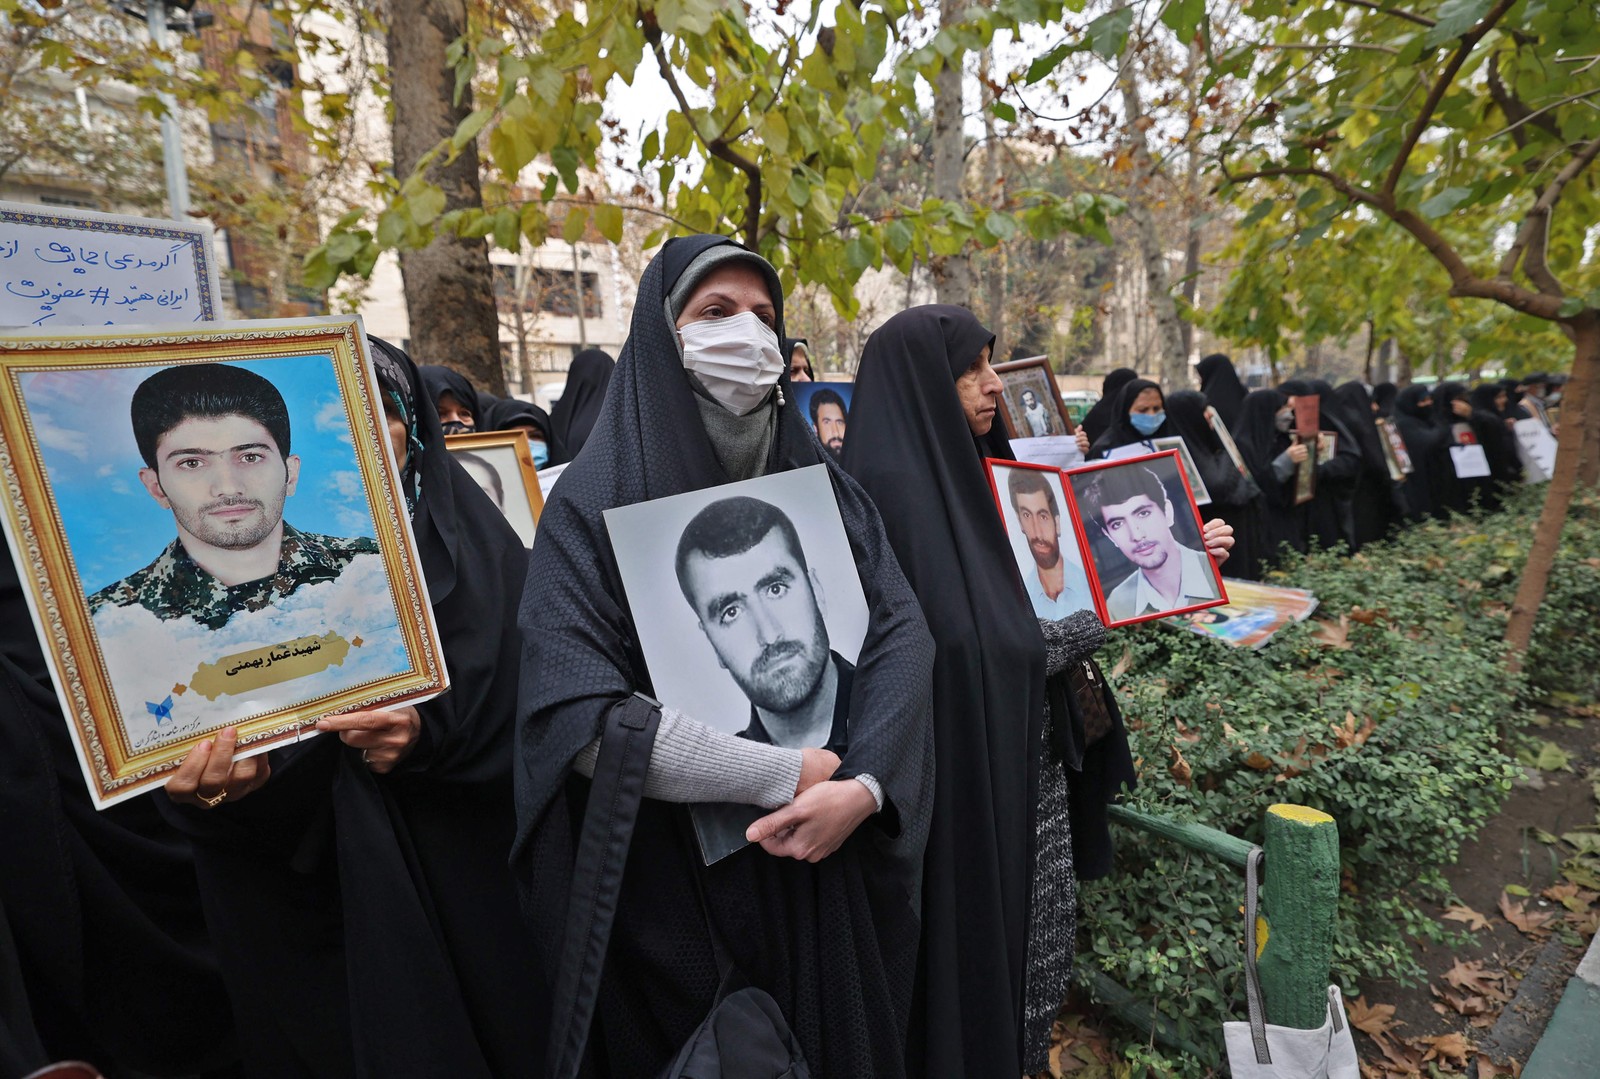 Mulheres se reúnem com retratos de soldados mortos na guerra Irã-Iraque dos anos 1980, em frente à sede das Nações Unidas na capital do Irã, Teerã — Foto: ATTA KENARE / AFP